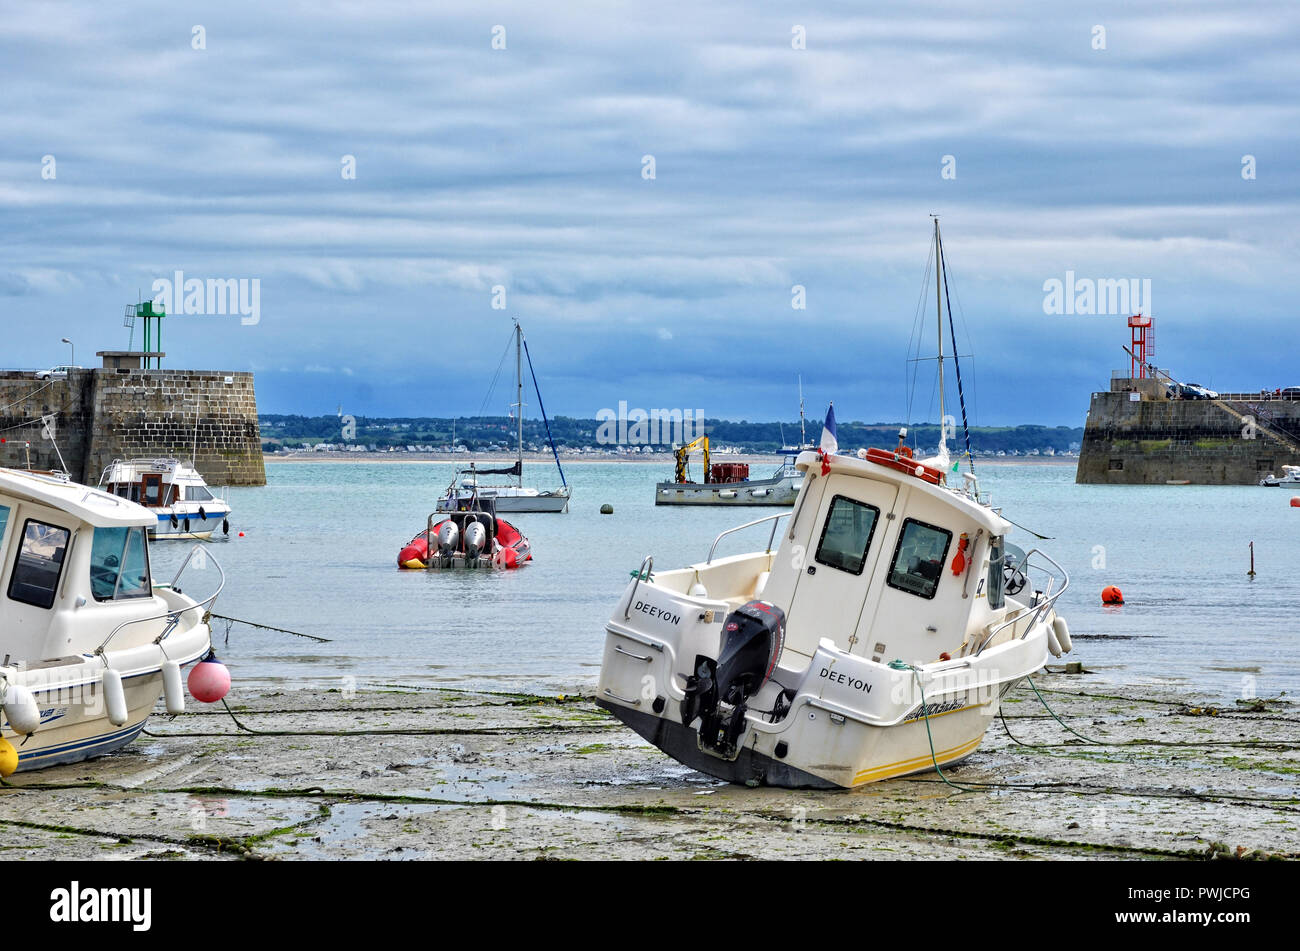 Bateaux échoués sur la boue à marée basse, dans le port de Granville, Normandie, France. Banque D'Images